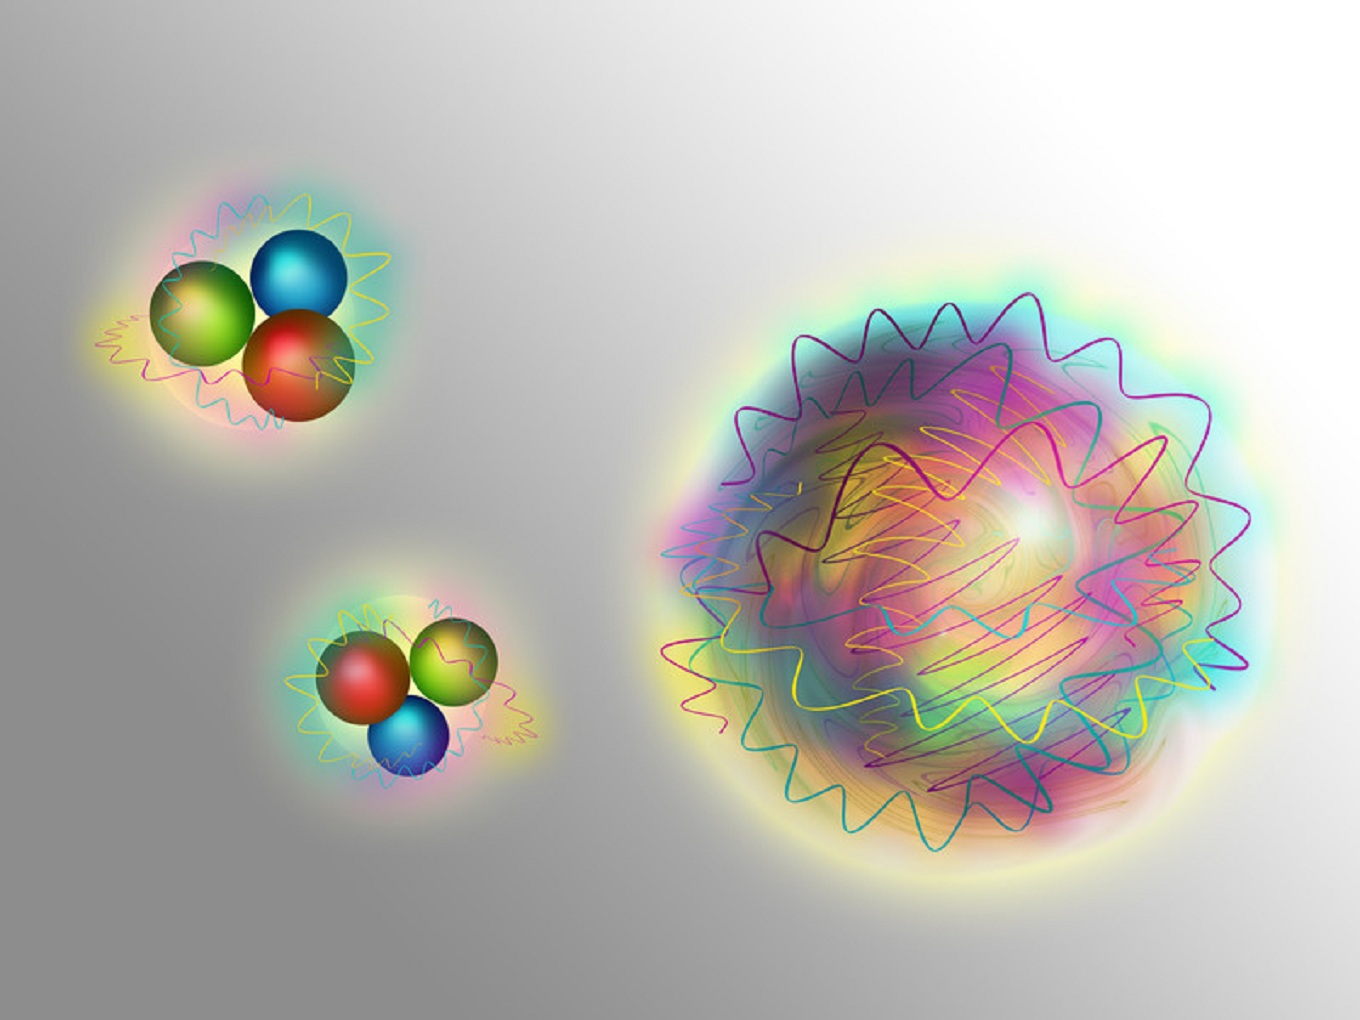 Los nucleones (izquierda) consisten en quarks (partículas de materia) y gluones (partículas de fuerza). Las bolas de gluones están hechas solo de gluones. Fuente: Universidad Técnica de Viena.